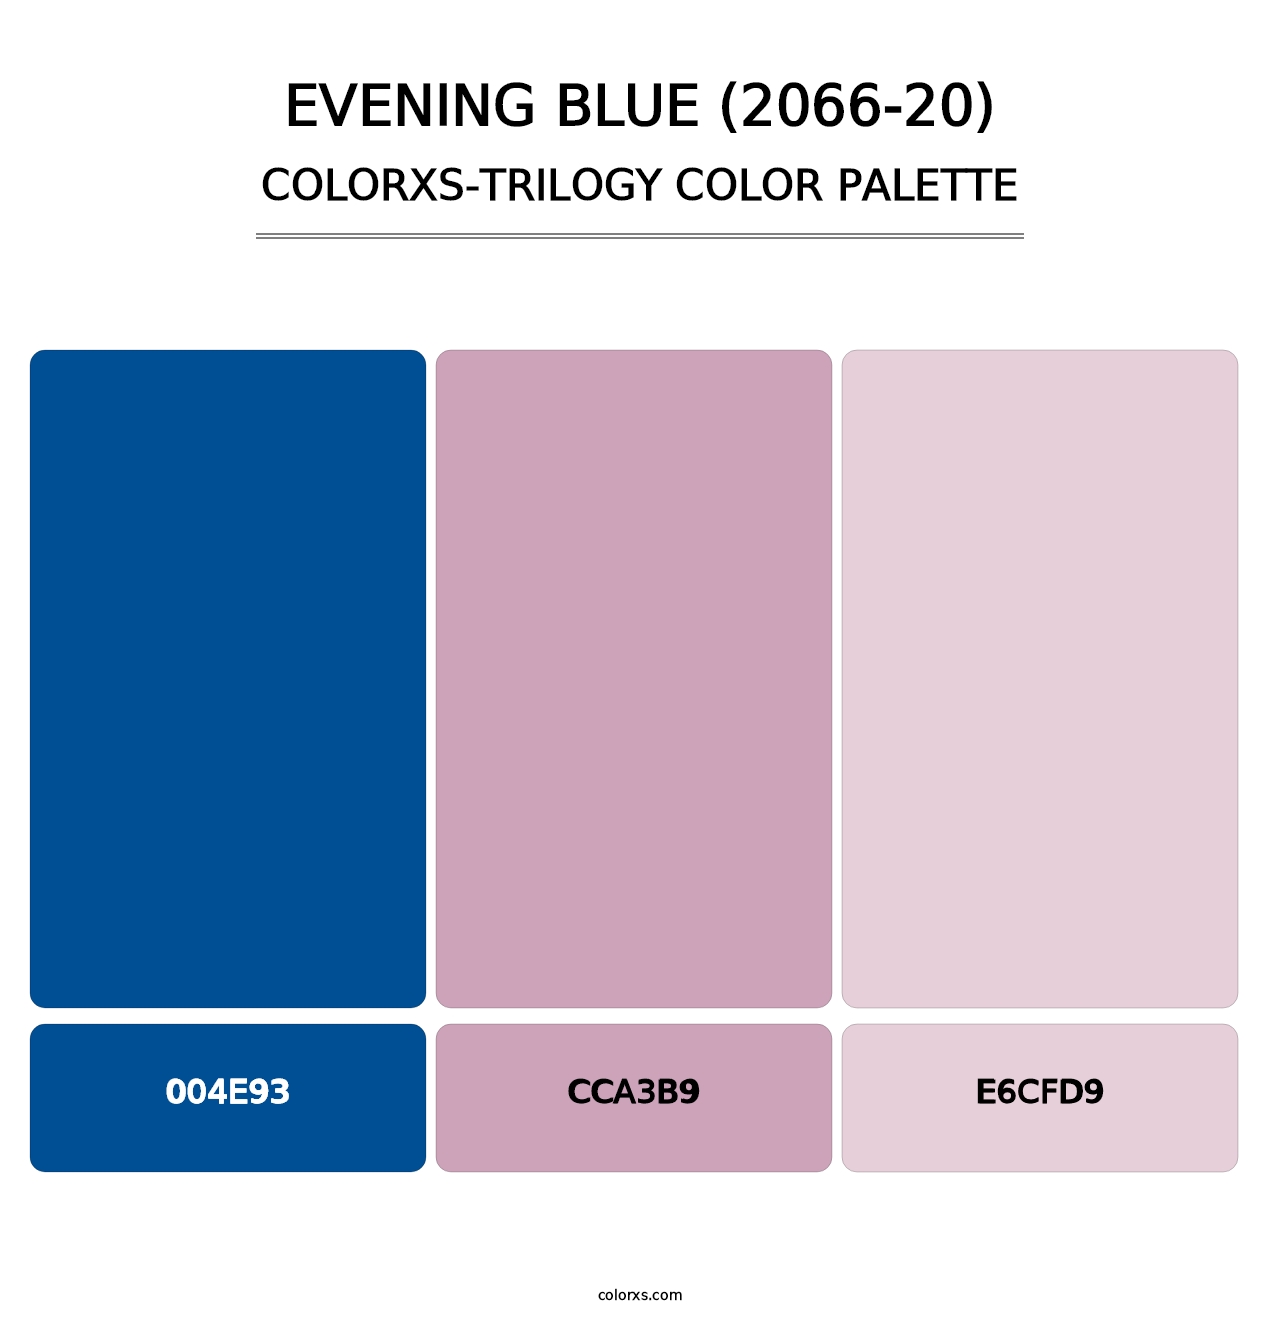 Evening Blue (2066-20) - Colorxs Trilogy Palette